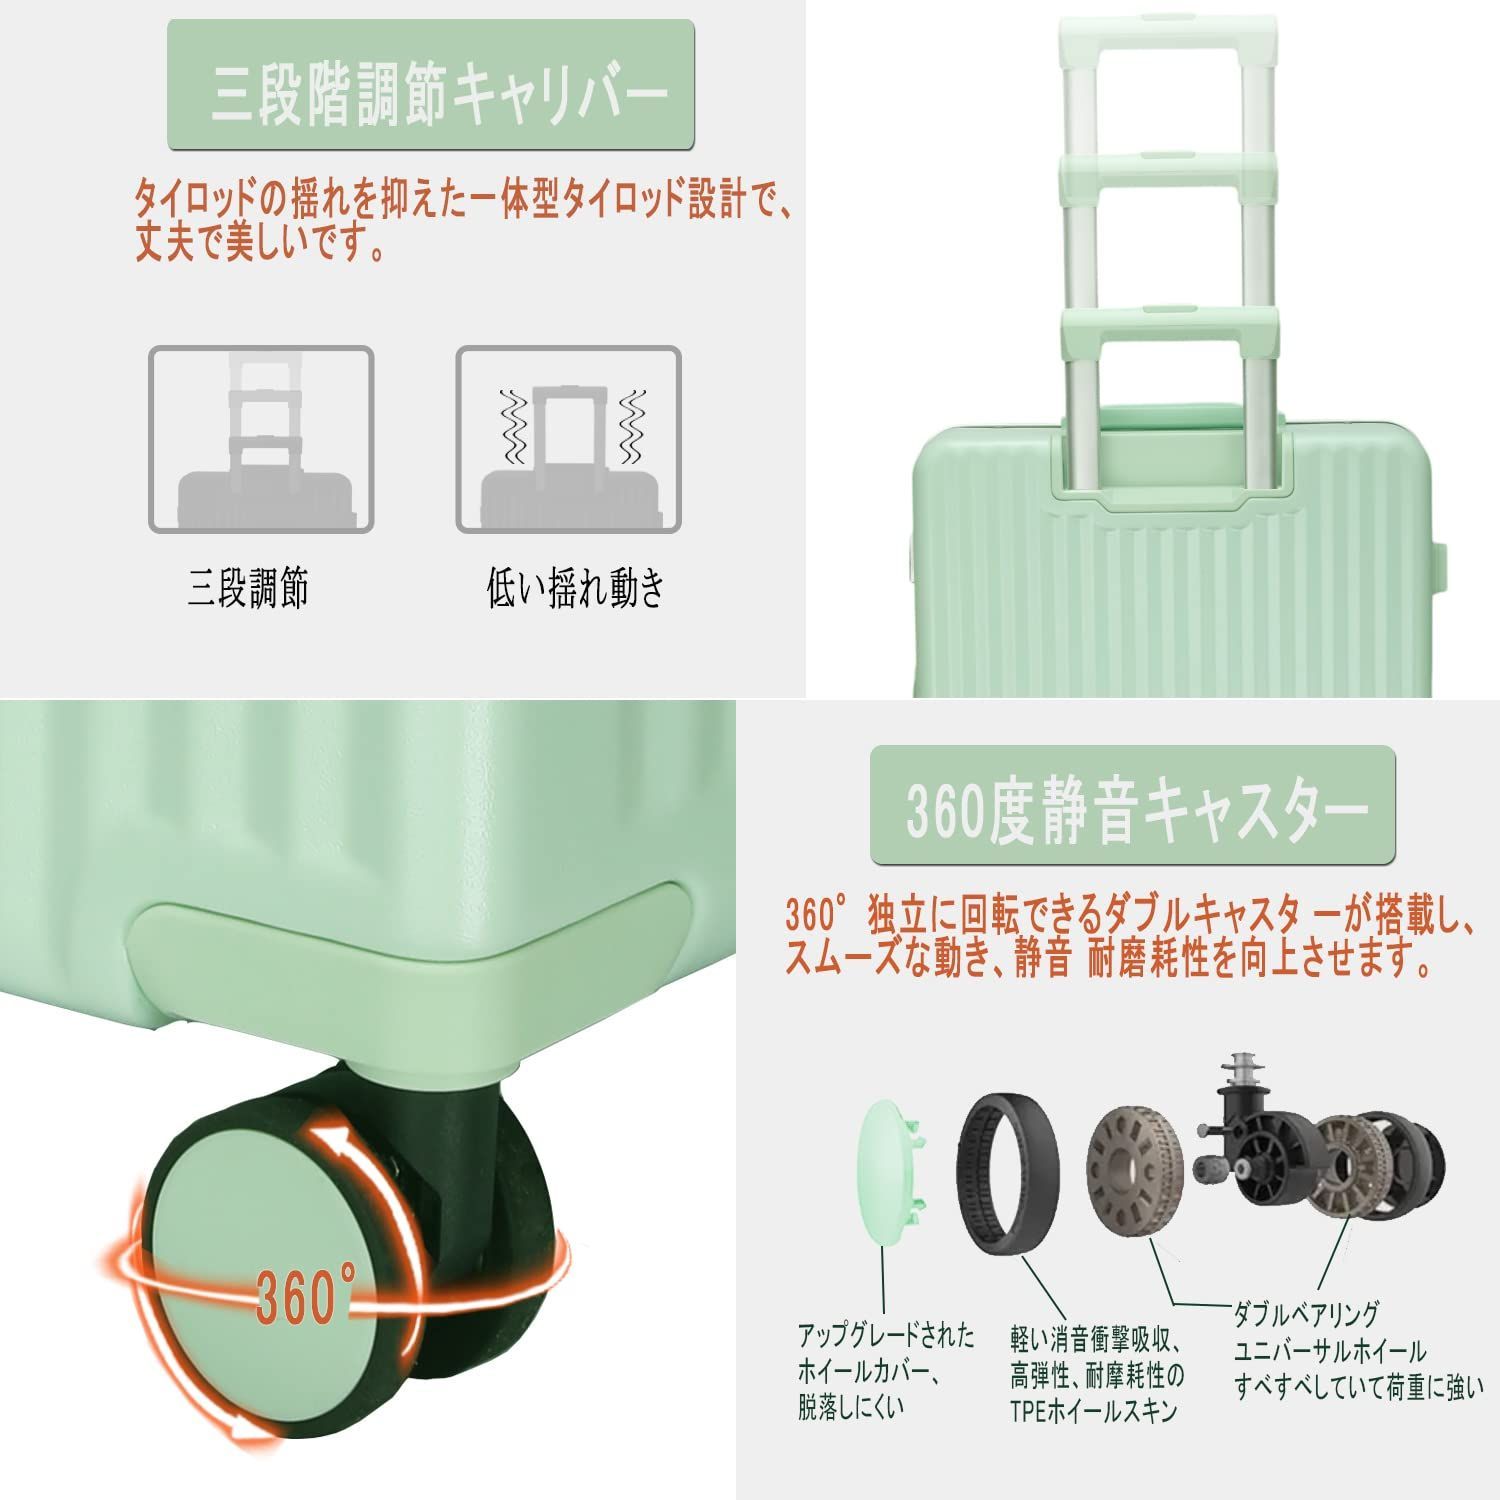 新品セール荷重に強いpc素材 持ちやすい 360^静音ホイール キャリーケース超軽量 スーツケース/キャリーバッグ